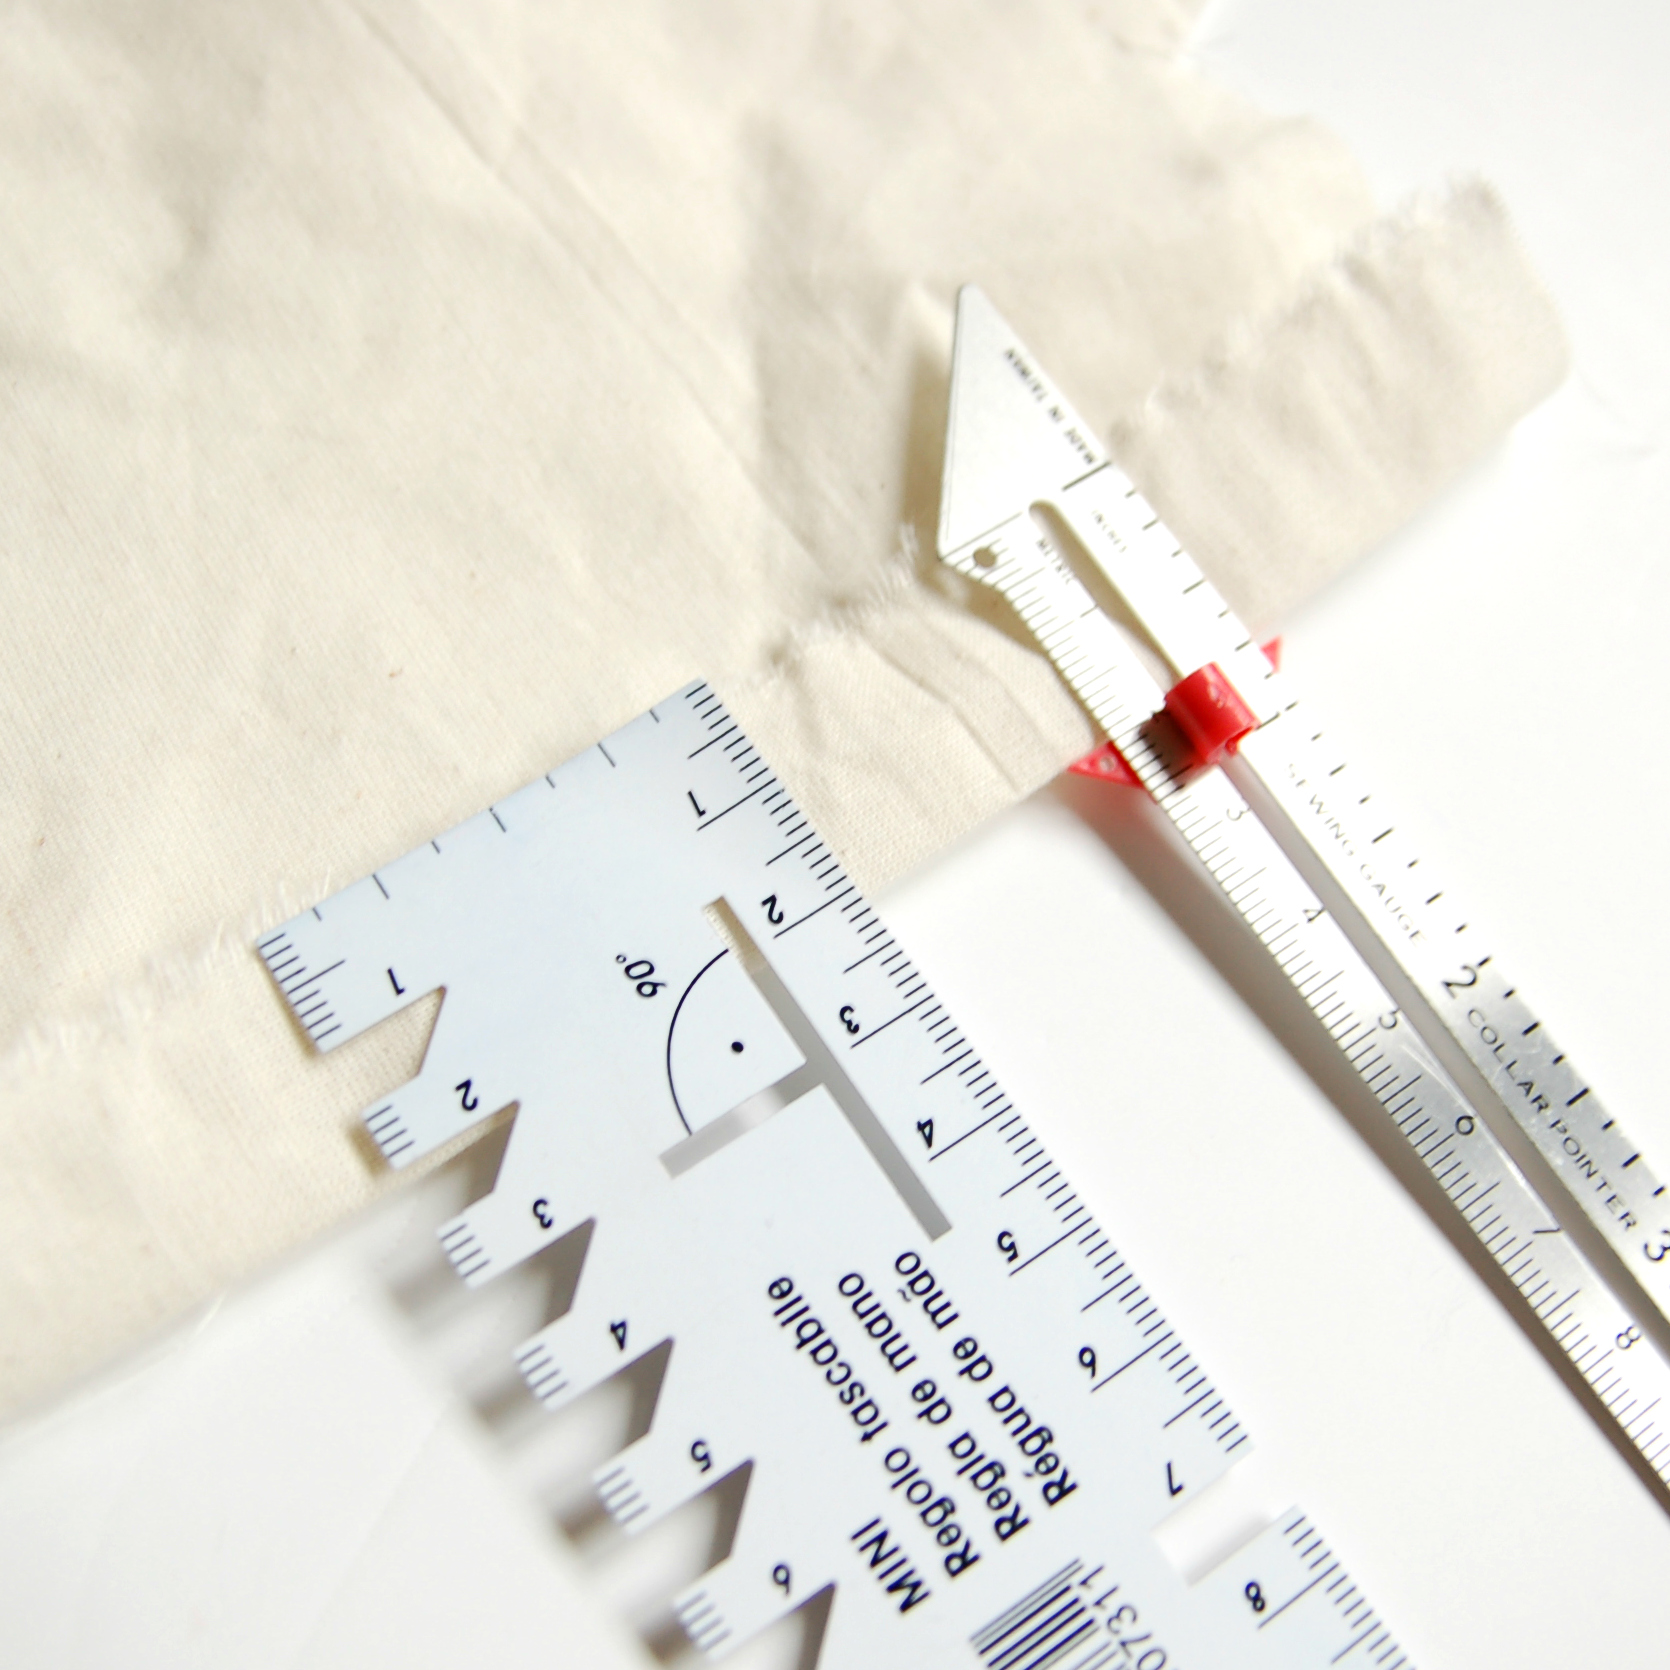  Tailors - Kit de pinzas de costura para costura, kit de  herramientas de costura profesional que incluye herramientas de marcadores de  tela de coser, kit de removedor de hilo y desgarrador